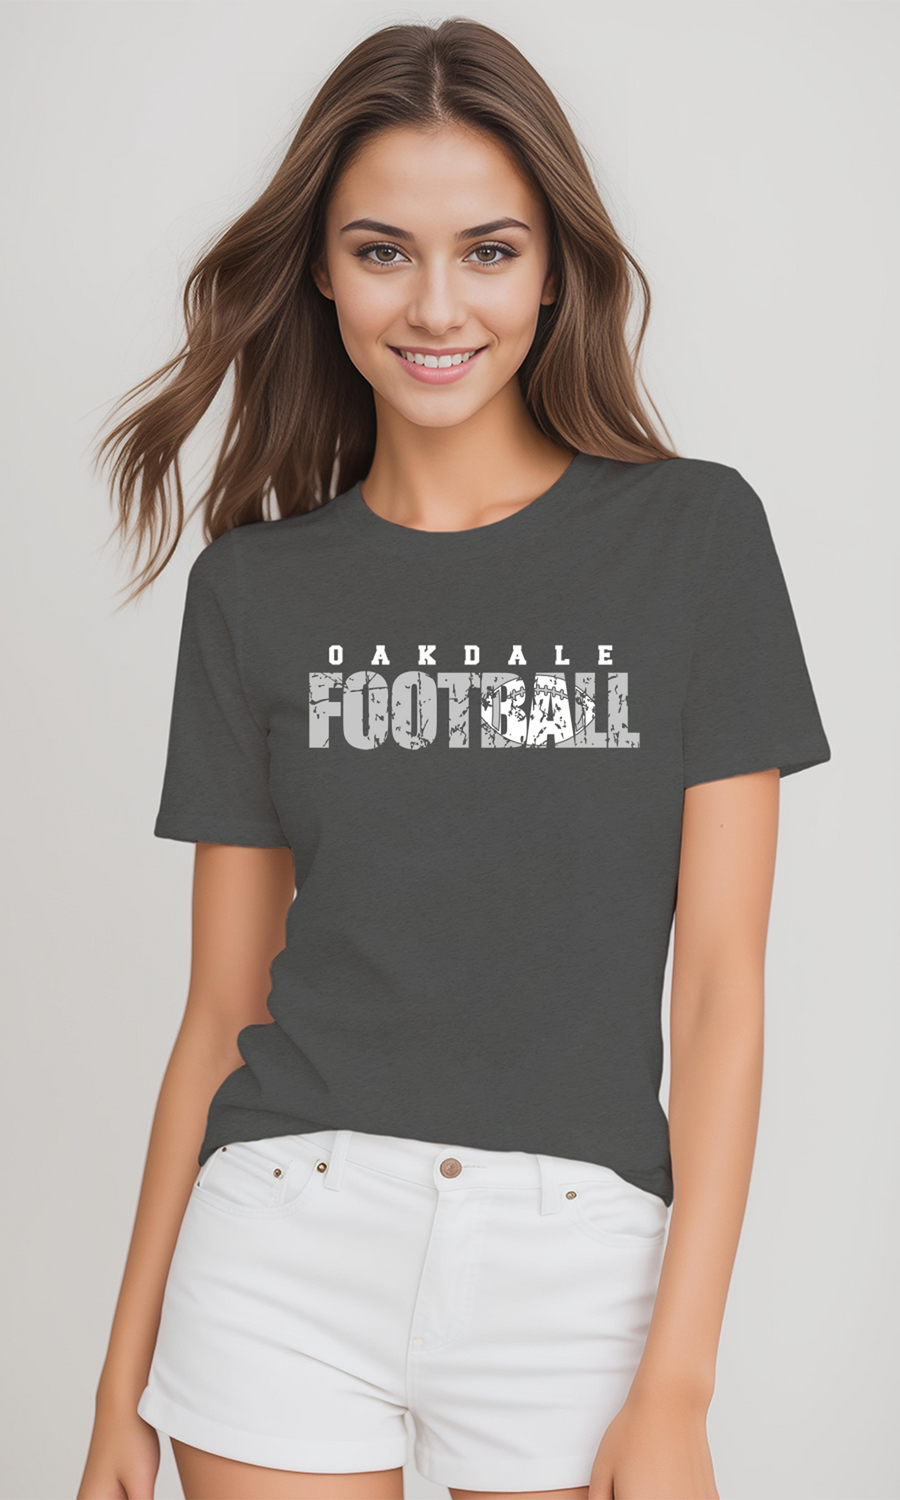 Oakdale Football- Distressed Design- Asphalt Unisex Shirt (OMS)